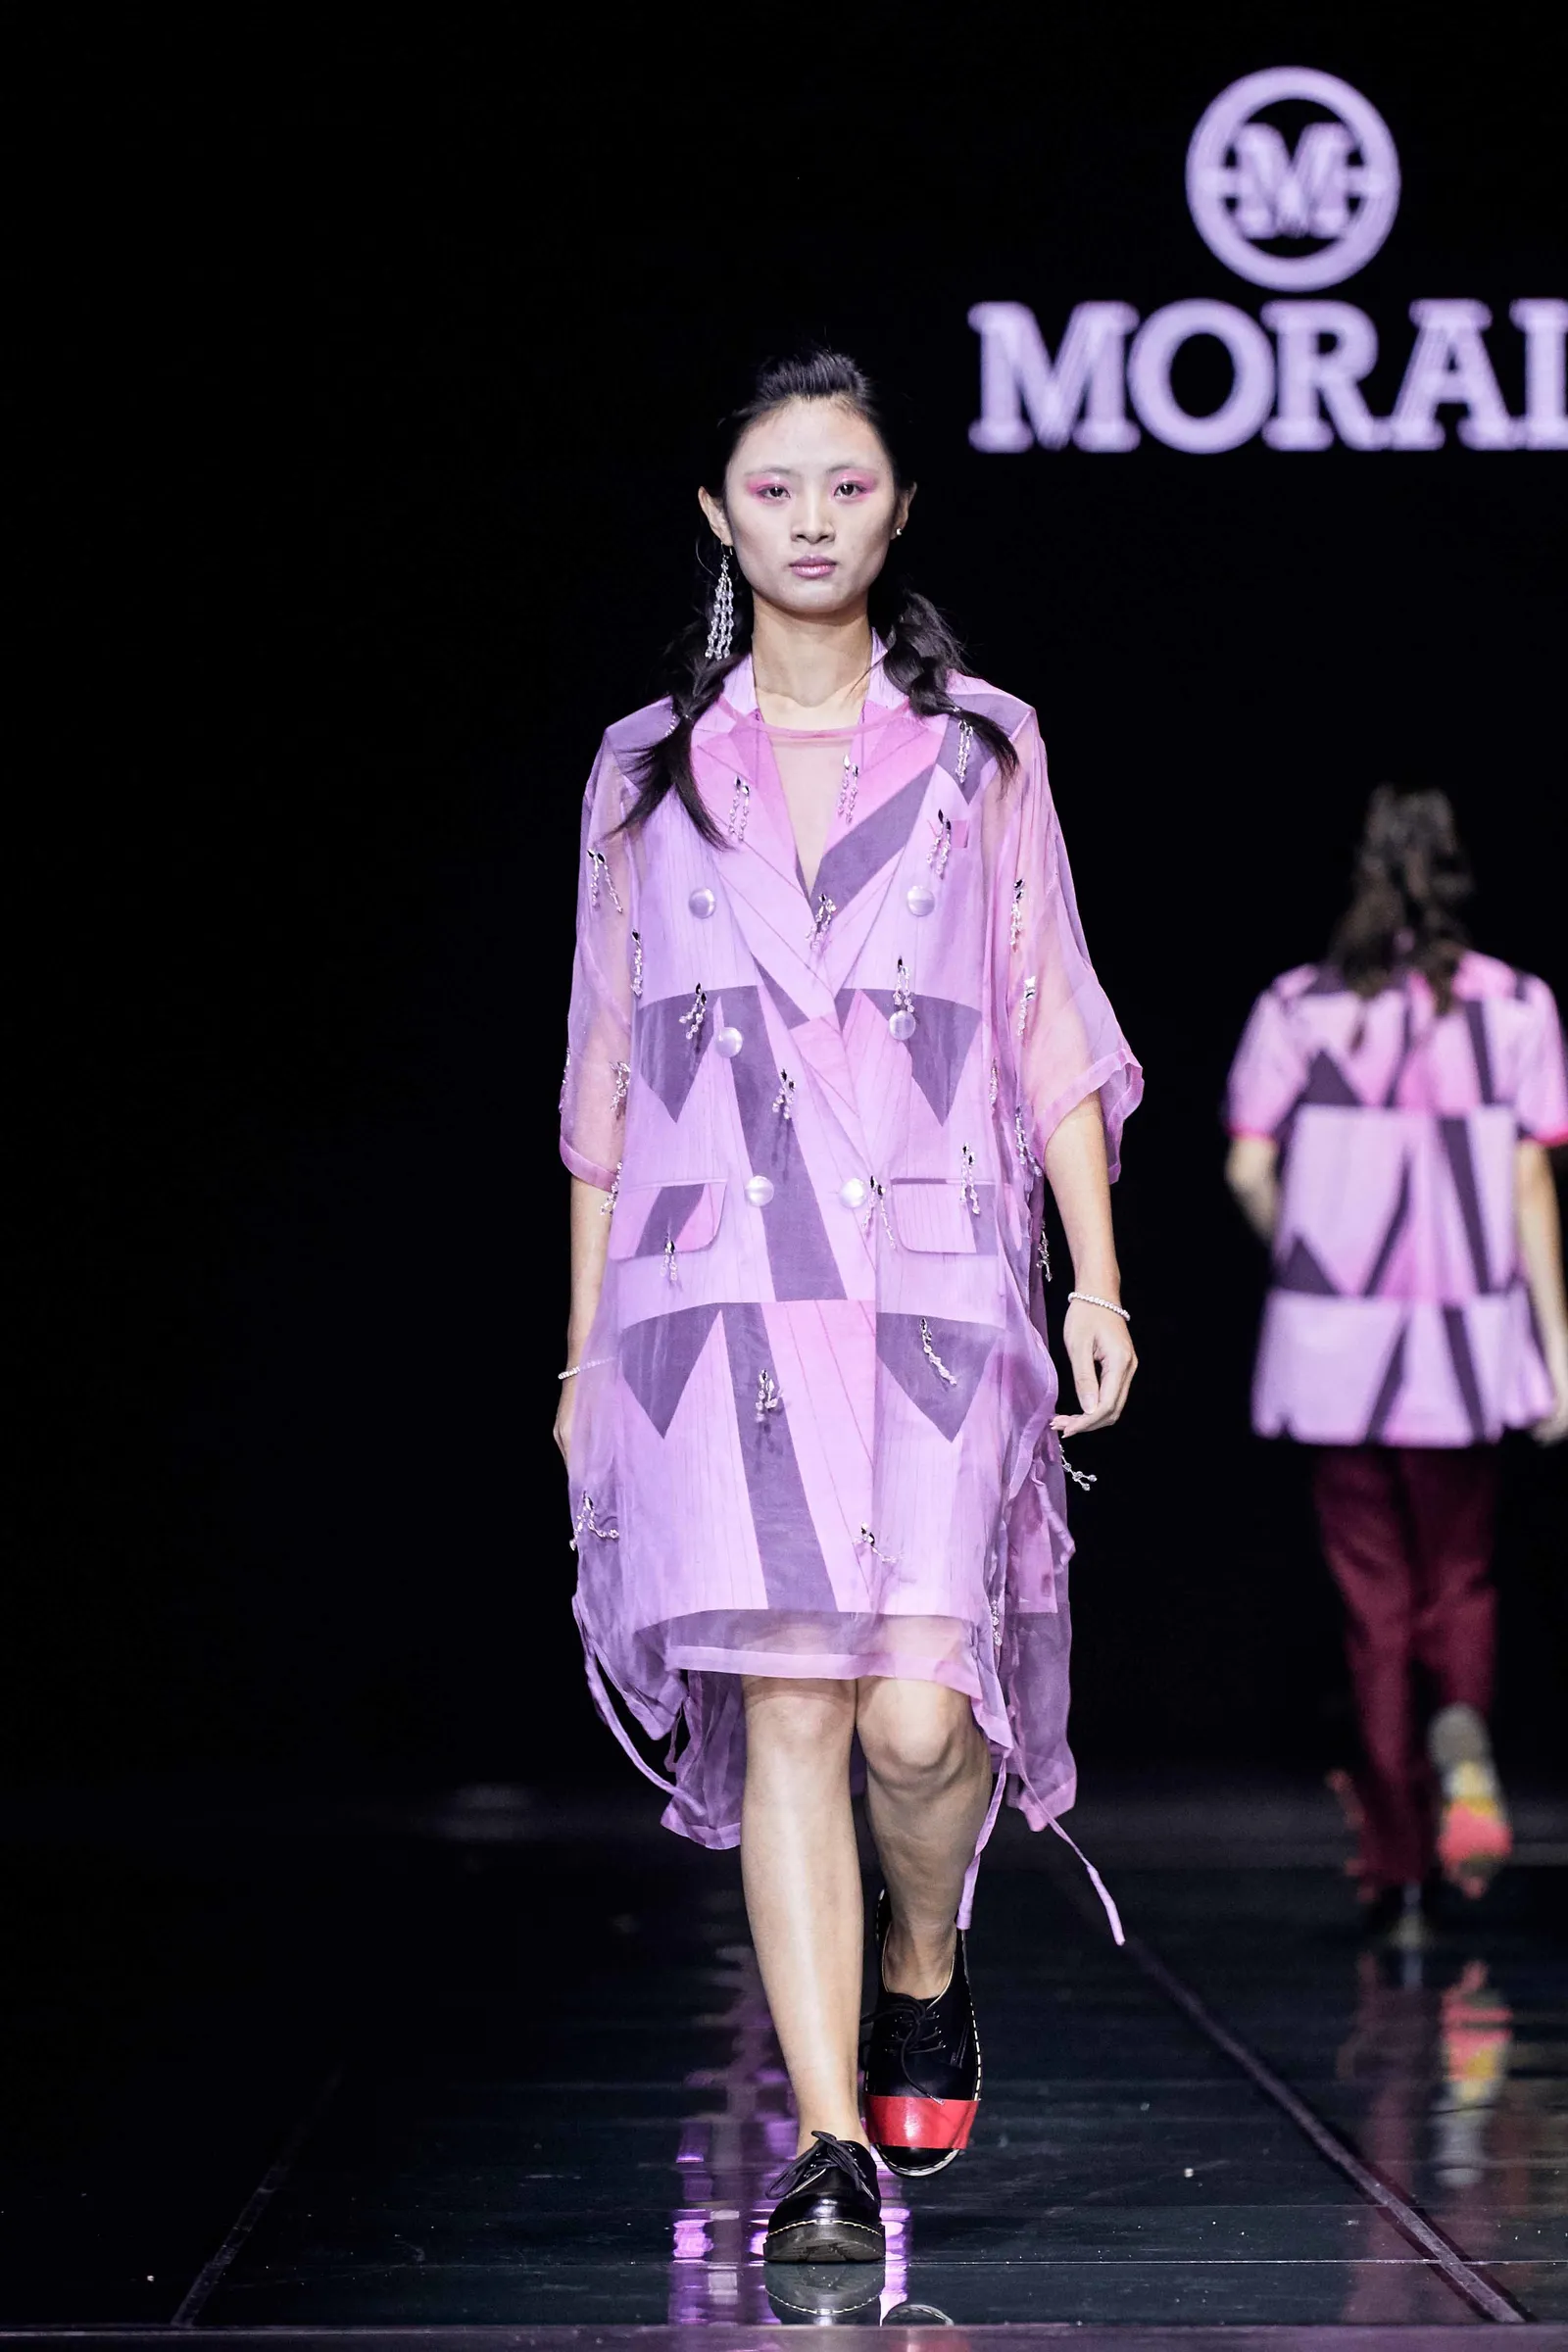 MORAL Tampil di Ajang Pekan Mode Harbin di China